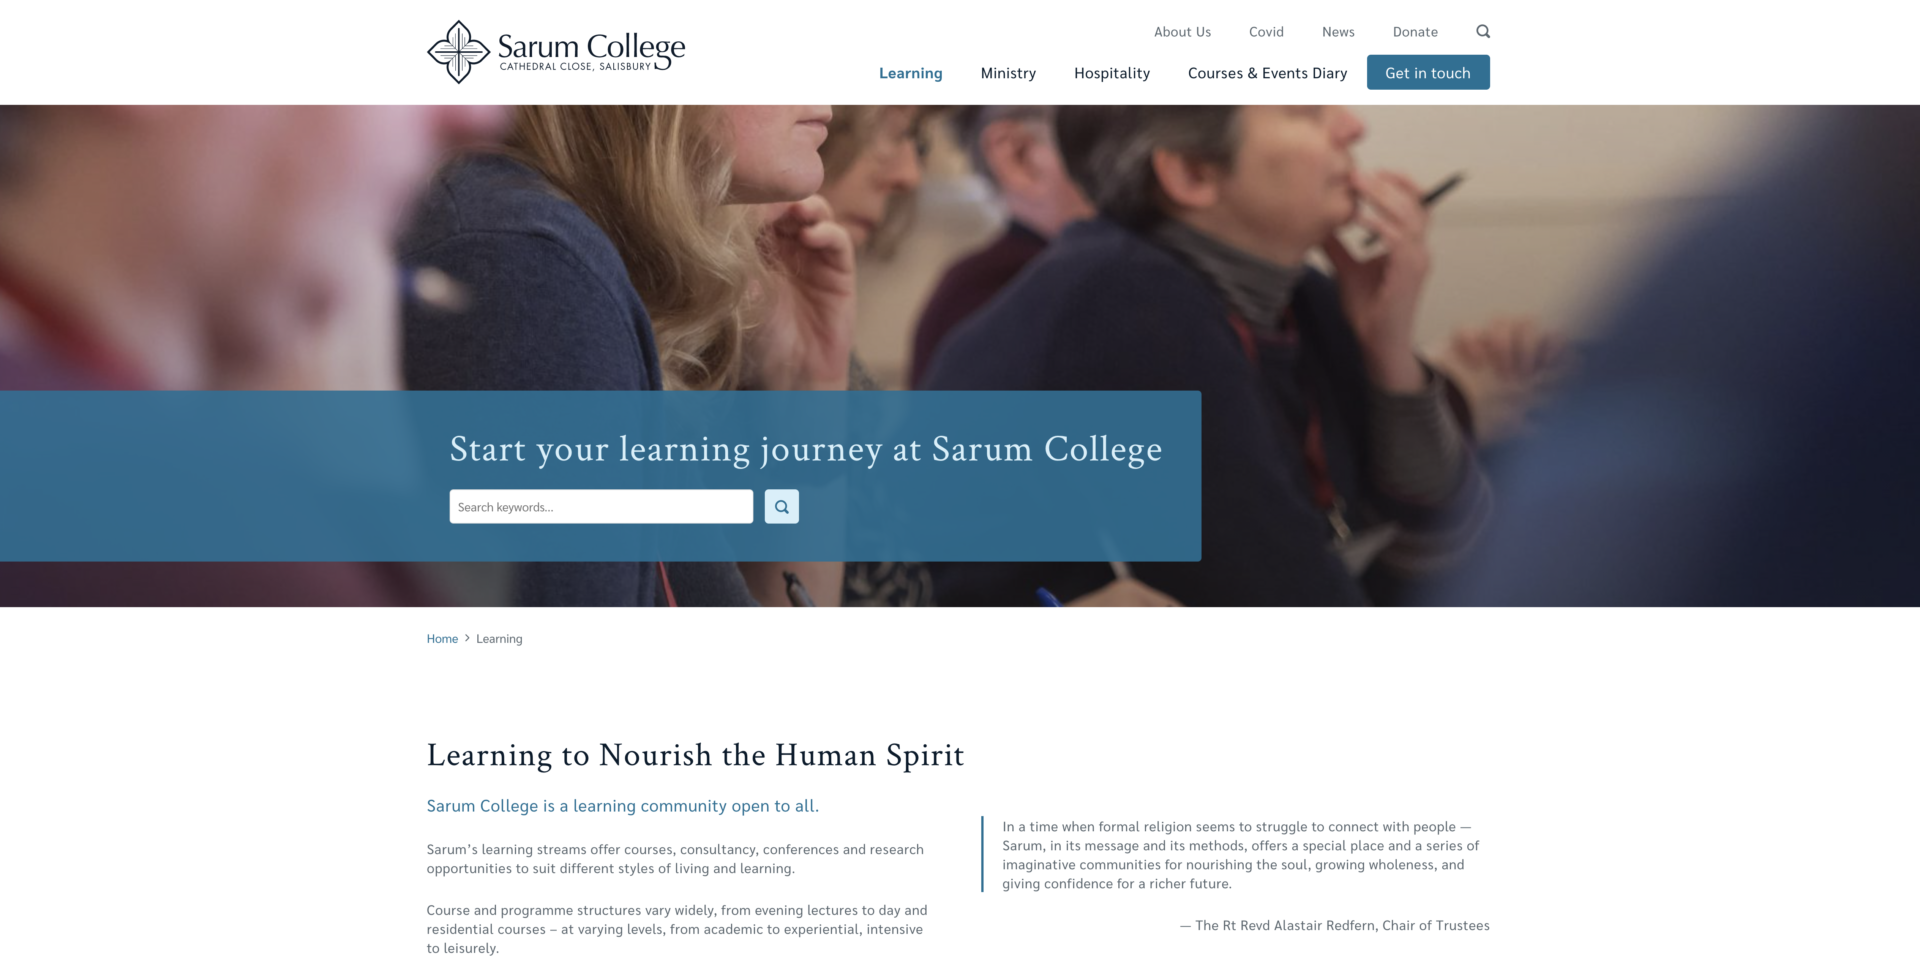 Sarum College new work website design